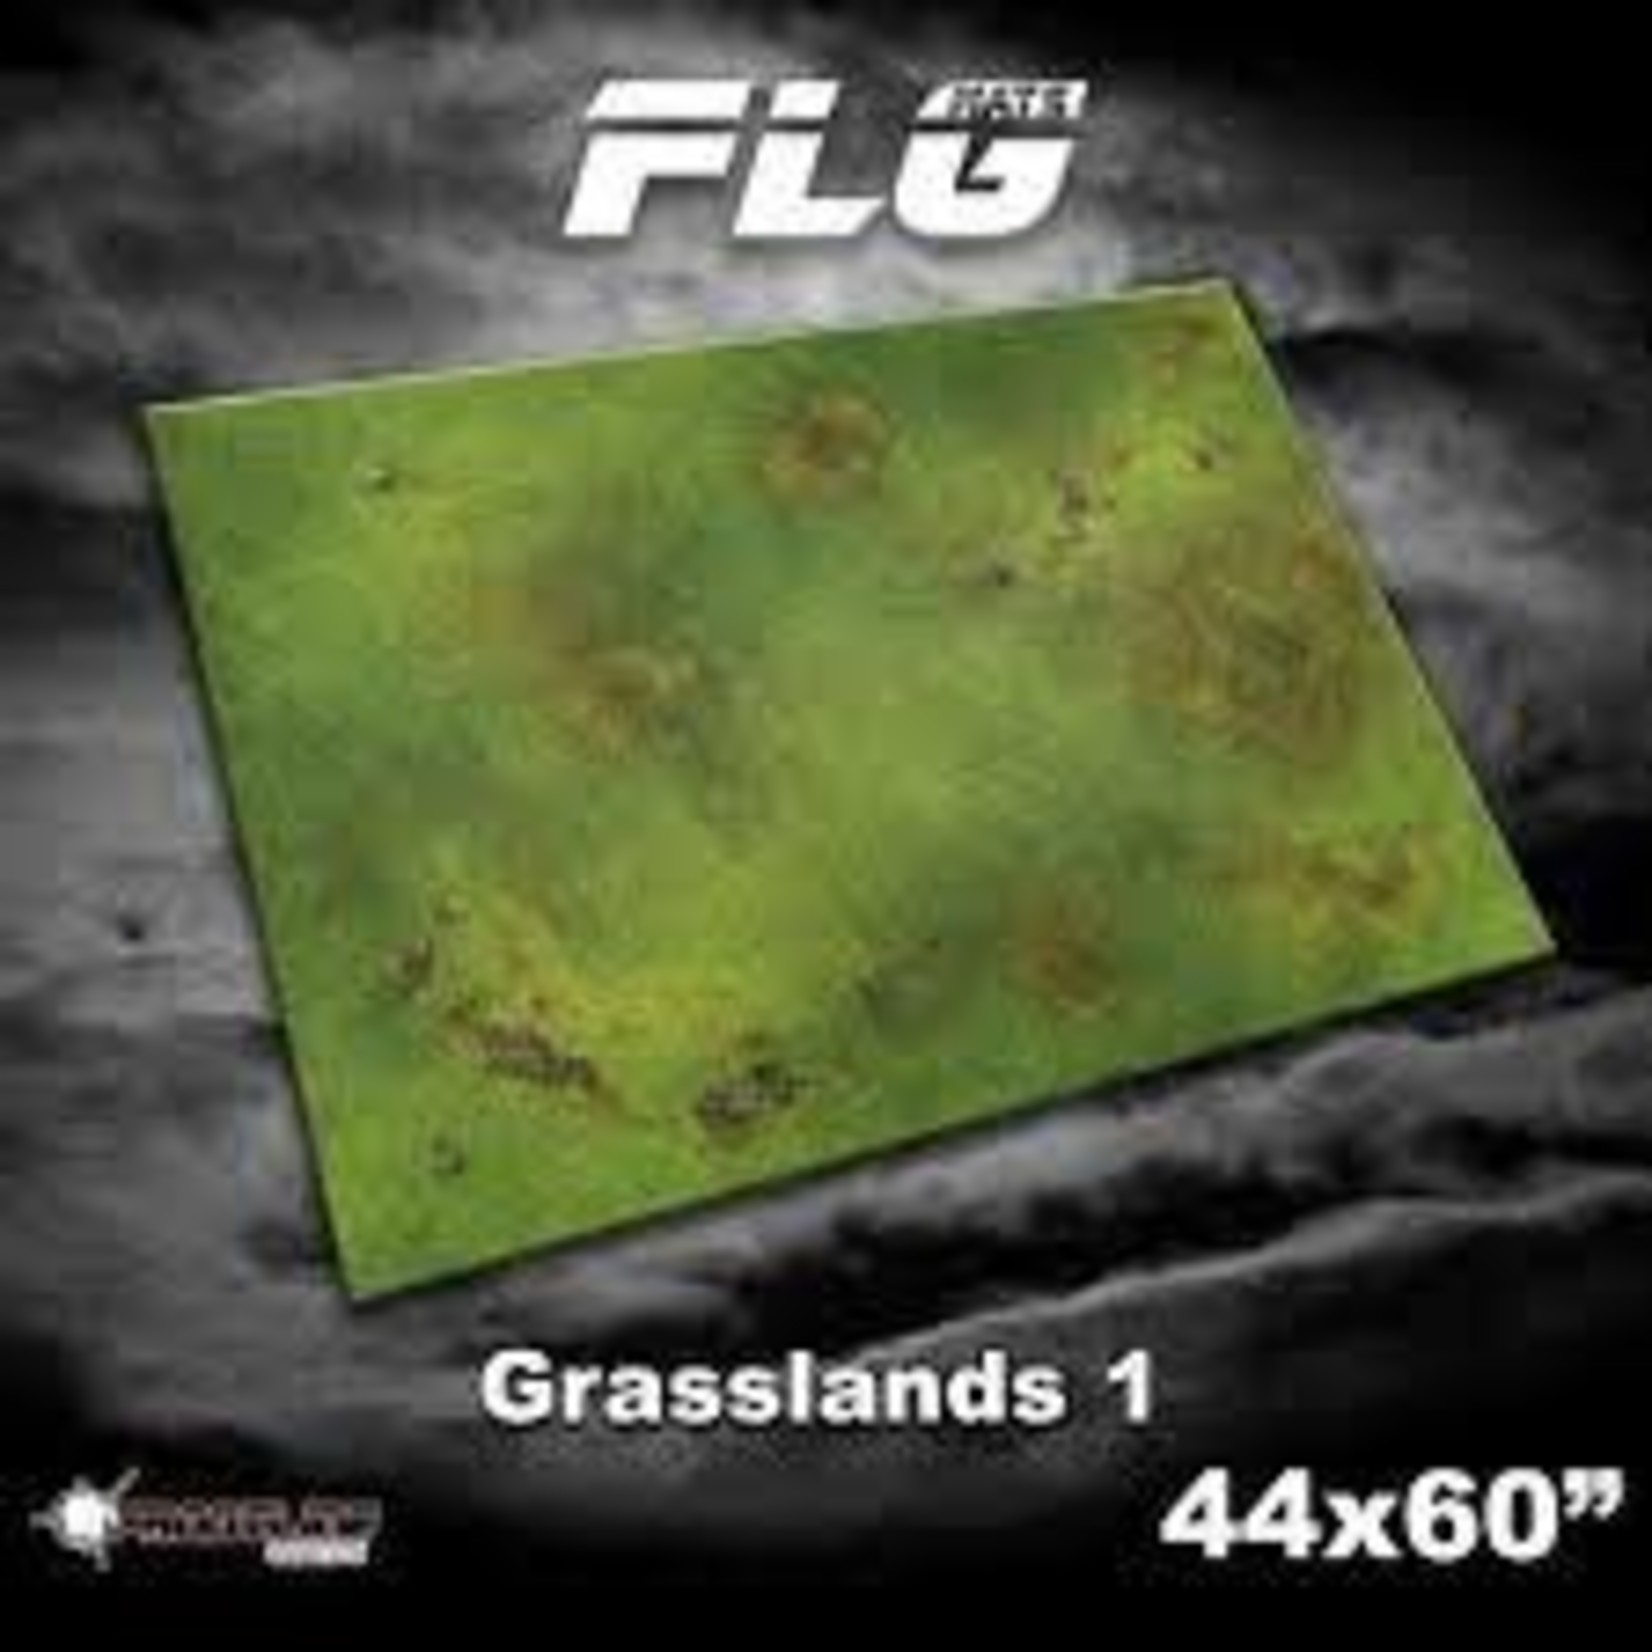 44 x 60 in FLG Mat Grasslands 1